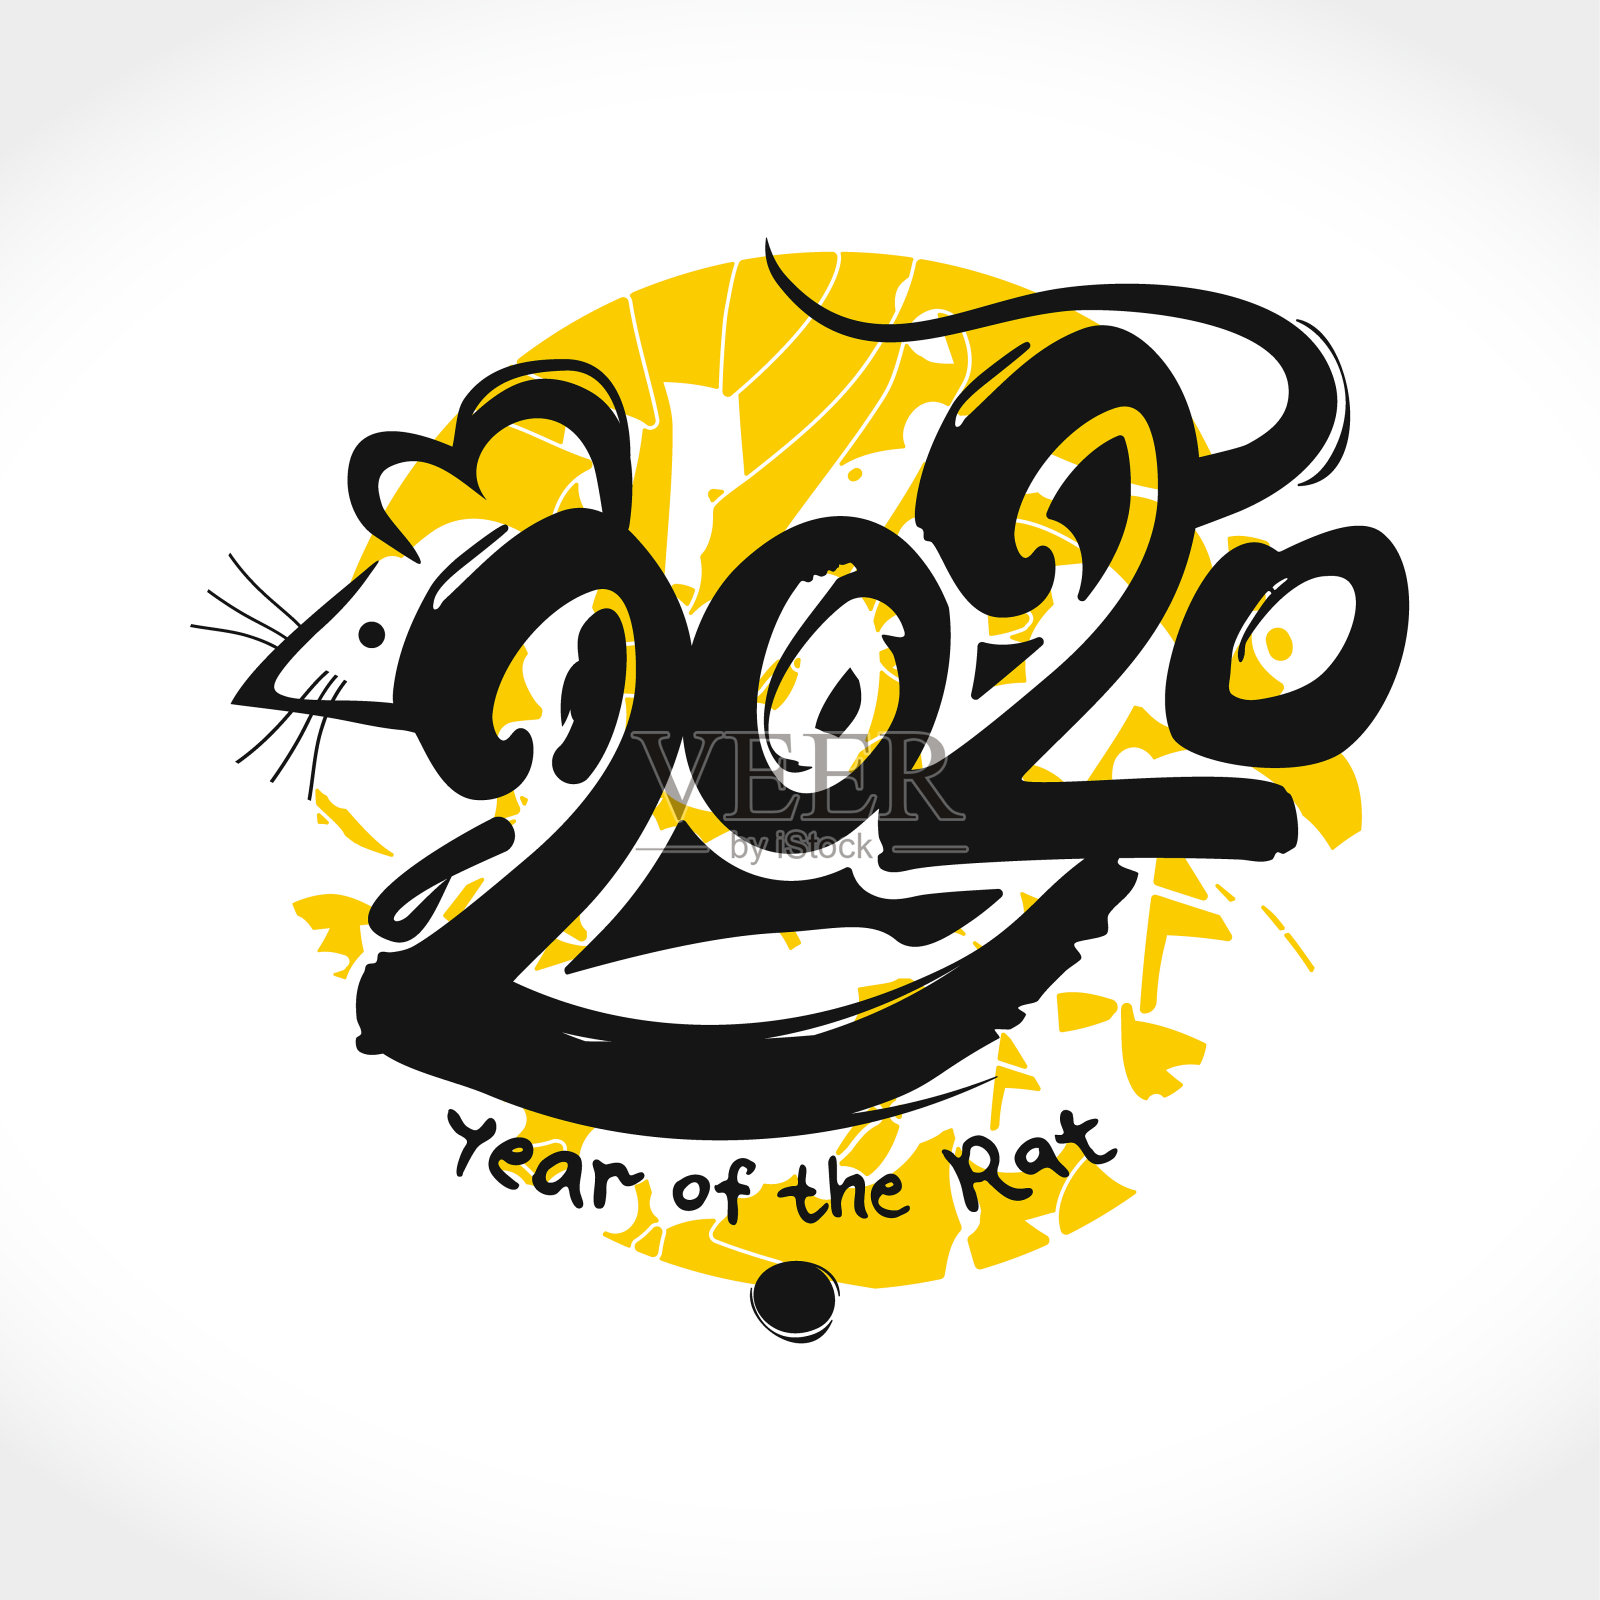 2020年鼠。手写模板与题字2020和老鼠在黄色圆形邮票的背景。插画图片素材